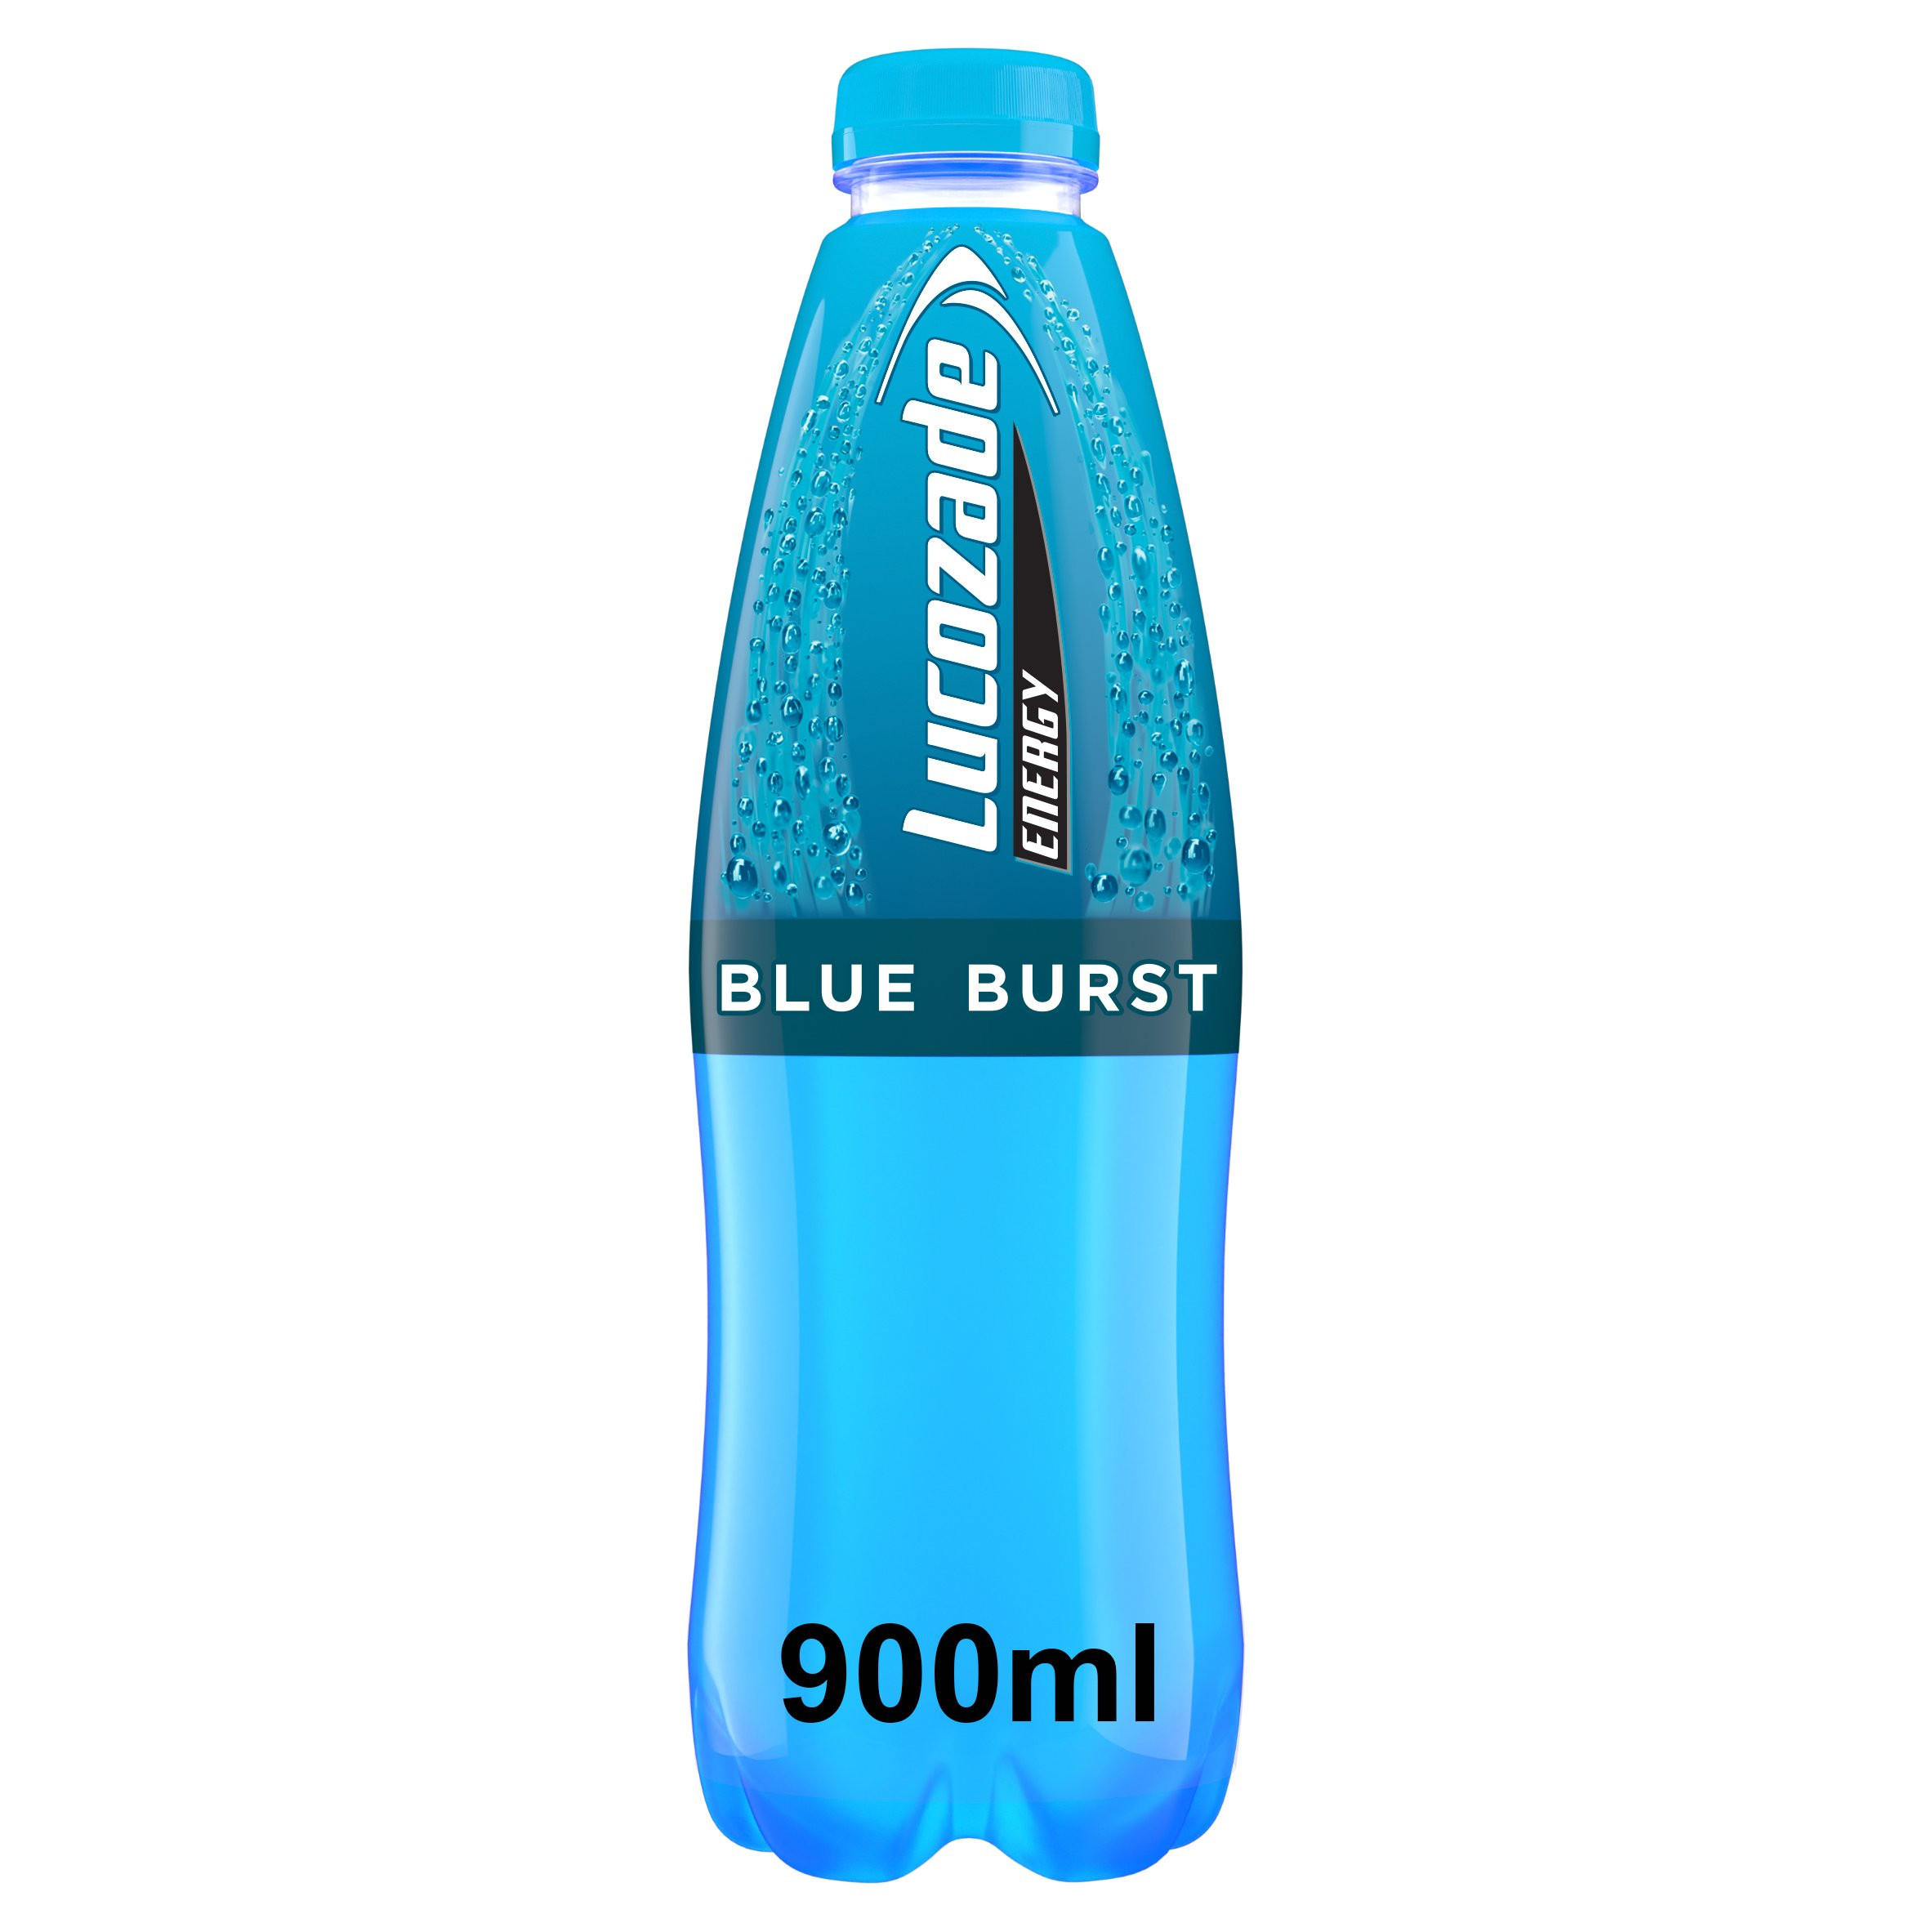 Lucozade Energy Drink Blue Burst 900ml